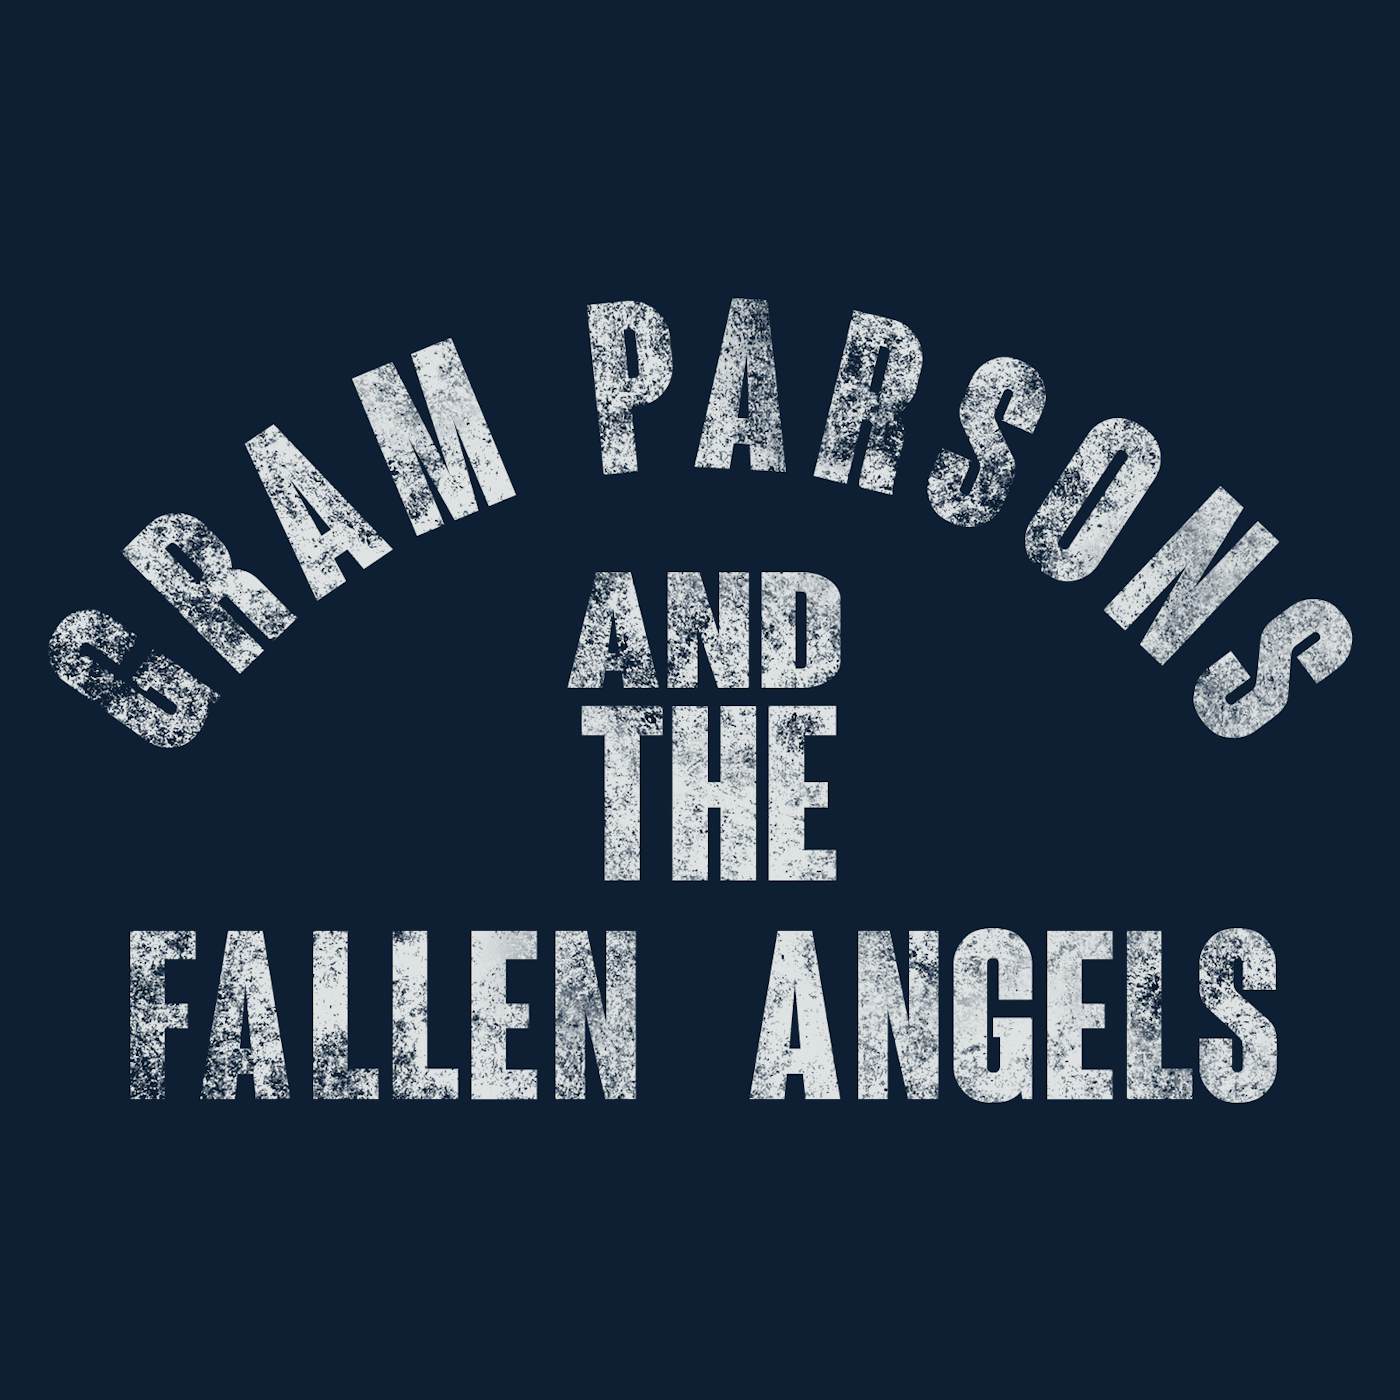 Gram Parsons T-Shirt | Fallen Angels Official Logo Gram Parsons T-Shirt